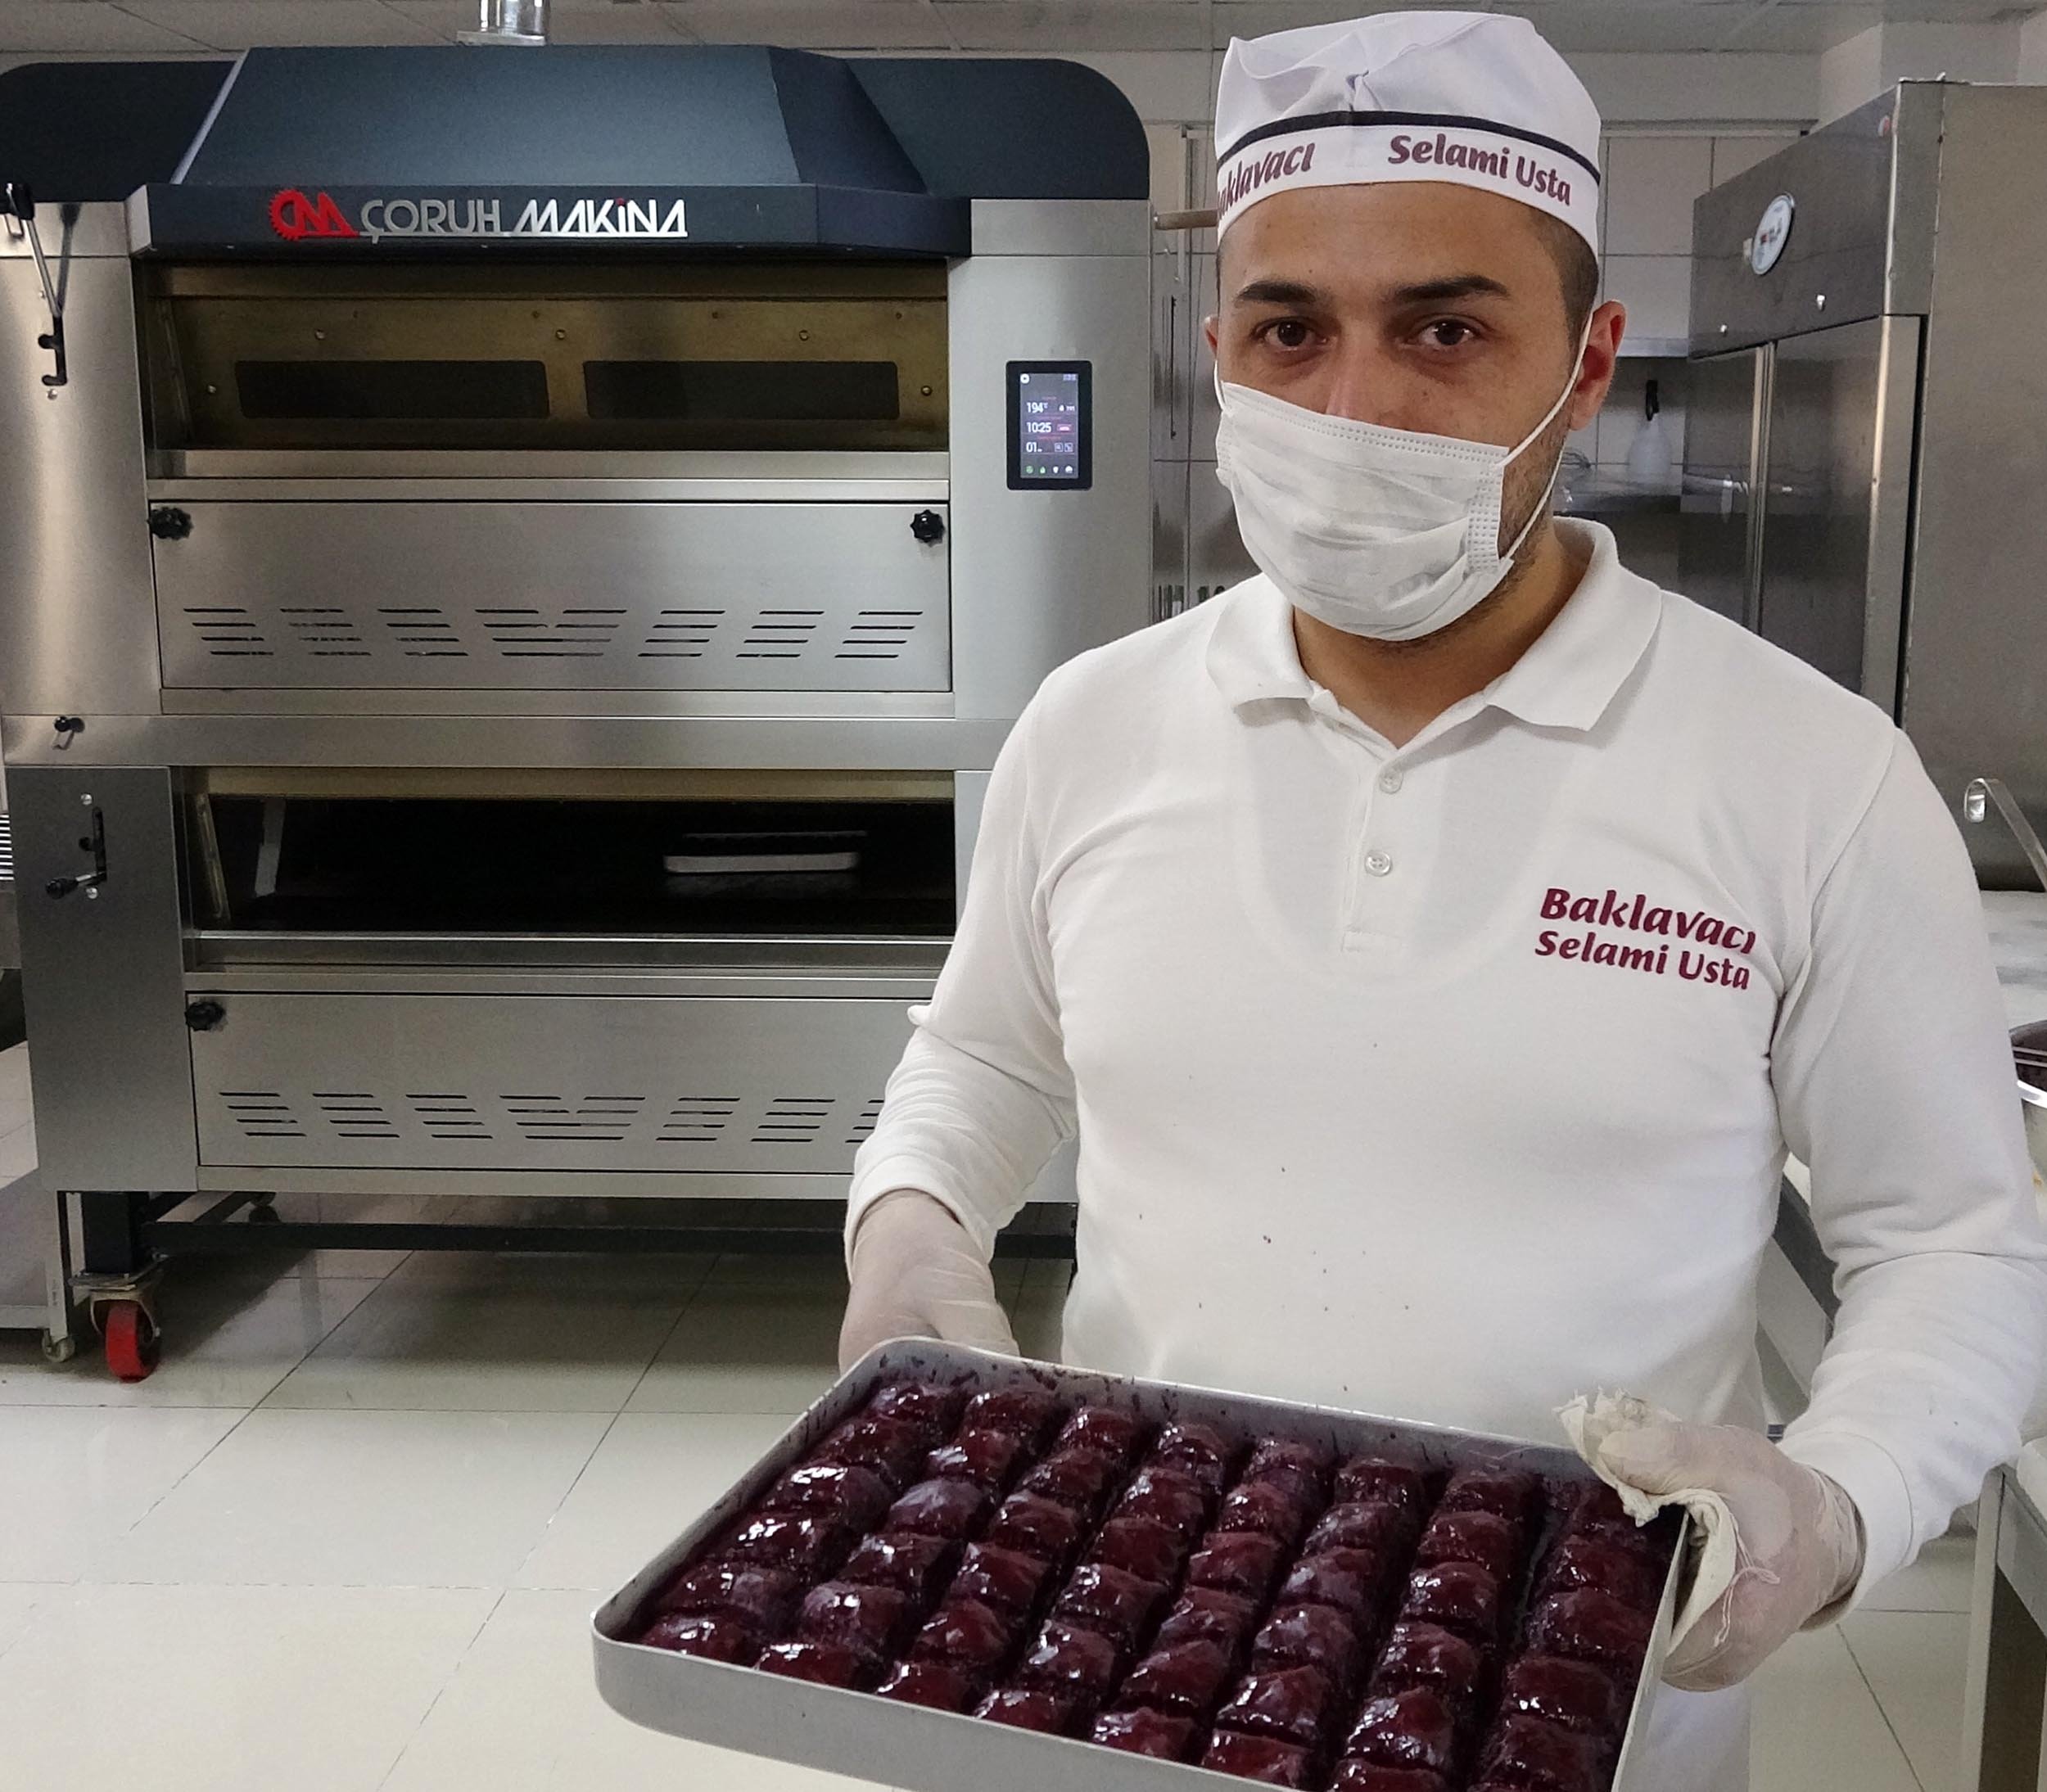 Турецкий пекарь изобрел пахлаву для диабетиков